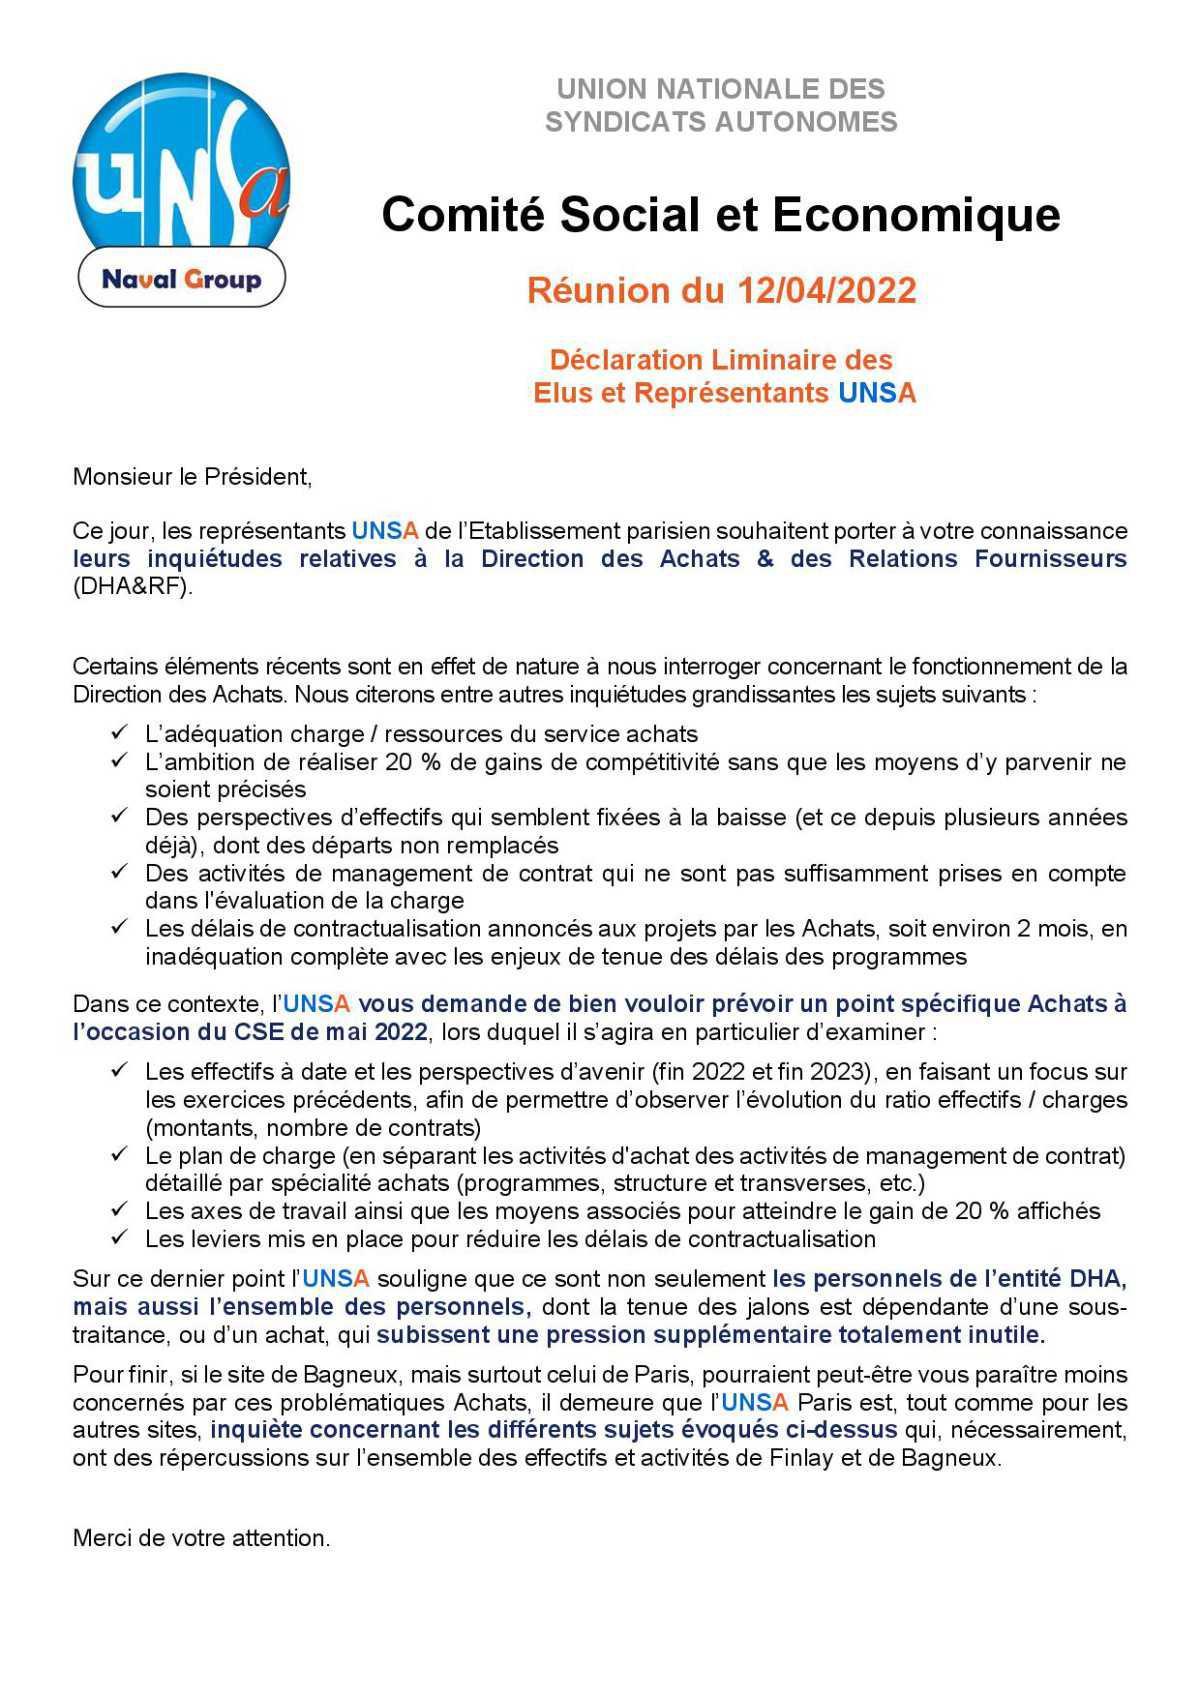 CSE de Paris - Réunion du 12 avril 2022 - Déclaration Liminaire